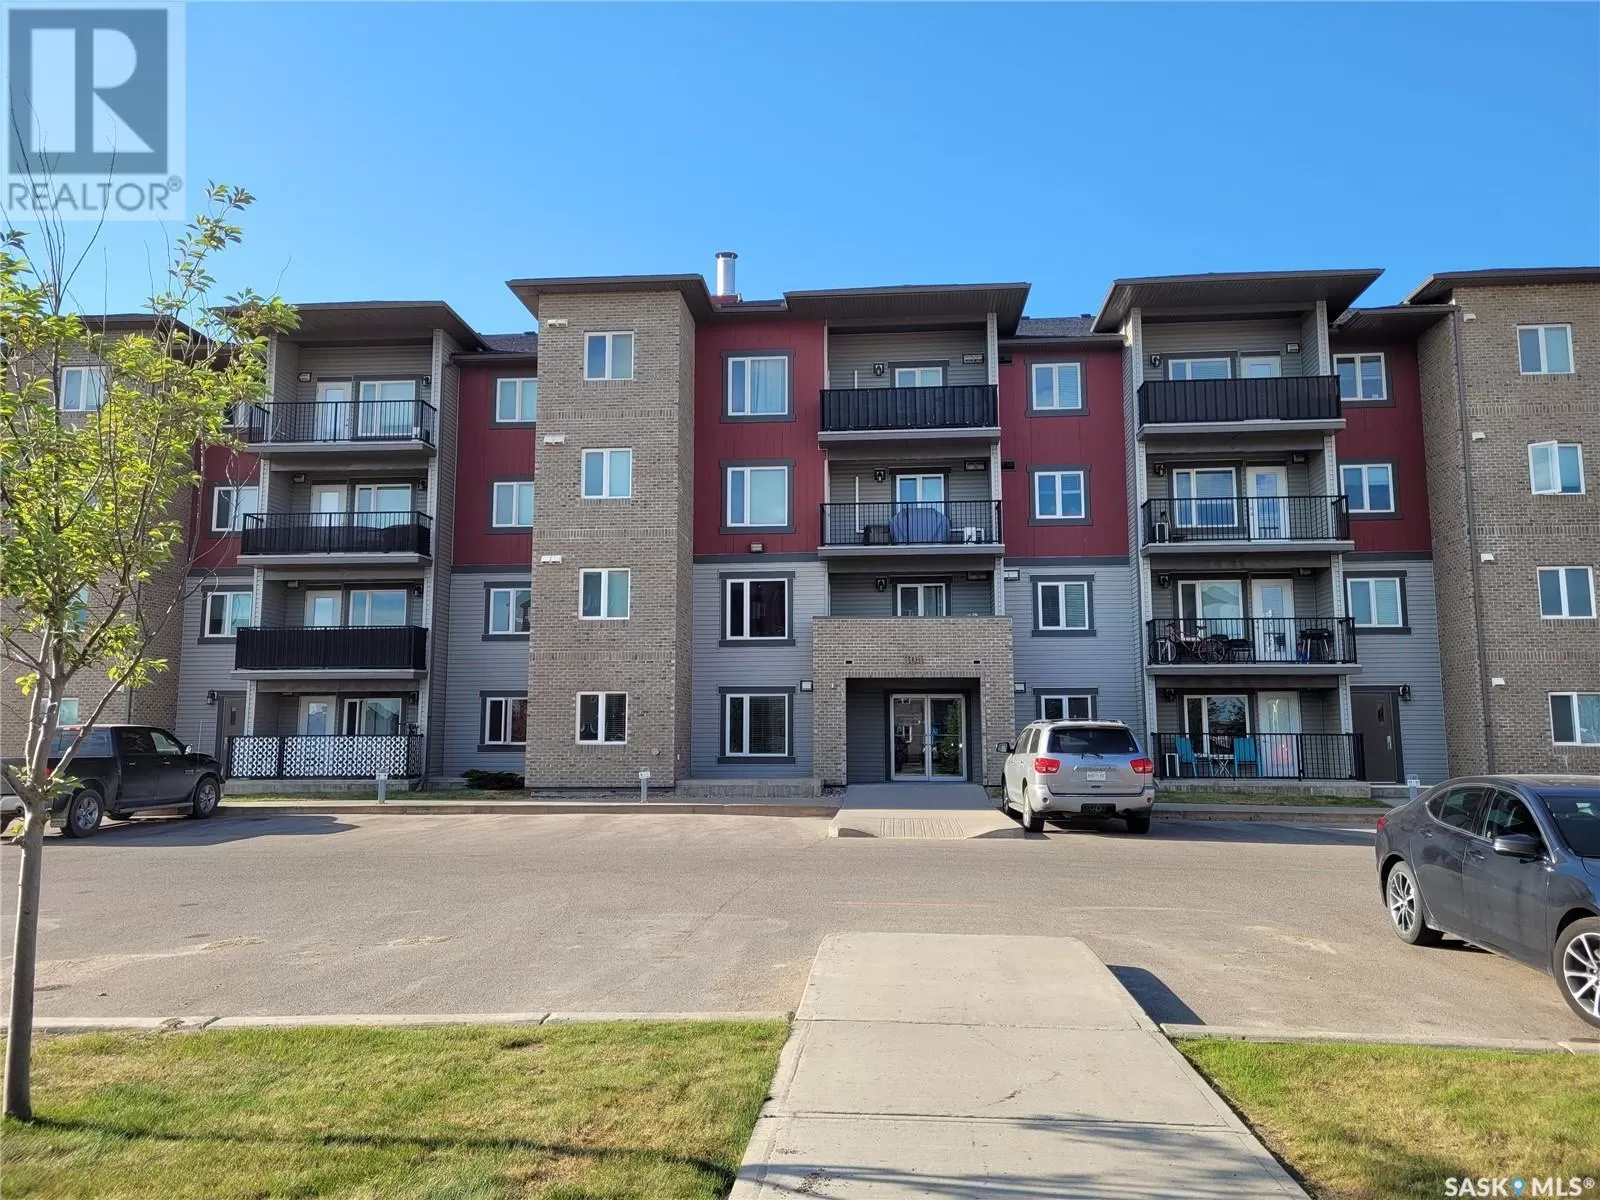 Apartment for rent: 103 308 Petterson Drive, Estevan, Saskatchewan S4A 2B8